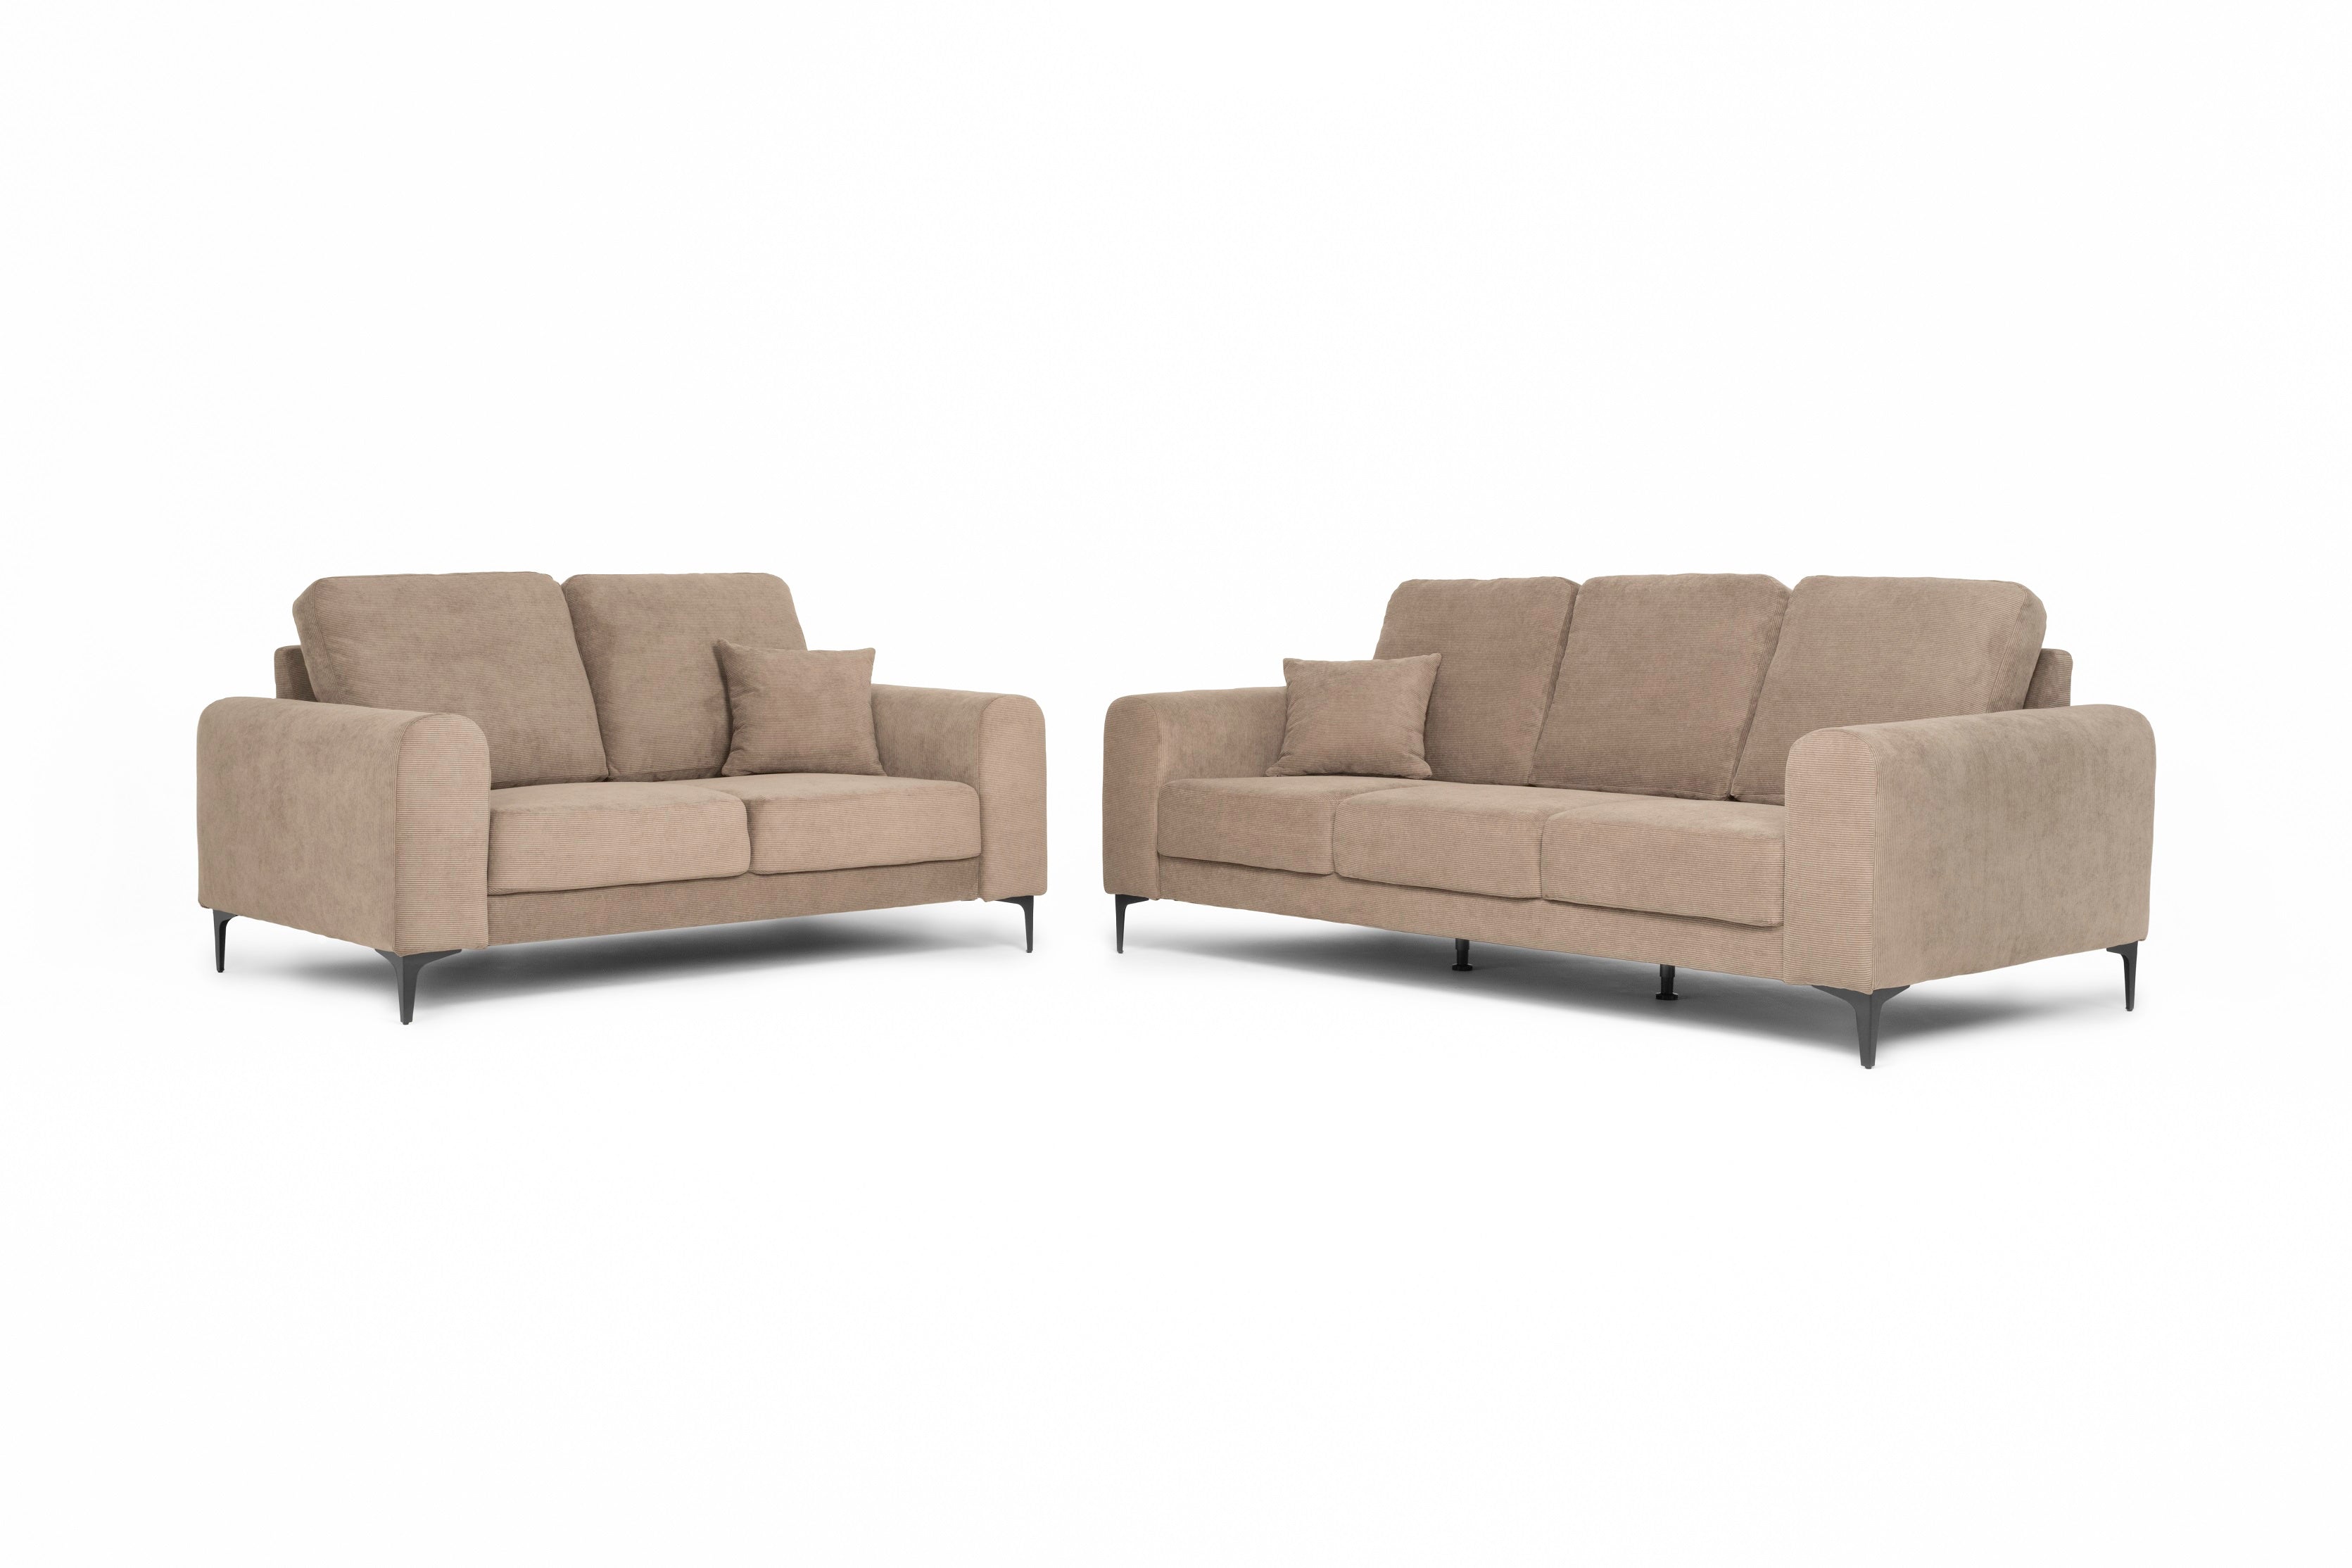 Conjunto: sofá 3 plazas y sofá 2 plazas económico - Nimes - Don Baraton:  tienda de sofás, colchones y muebles